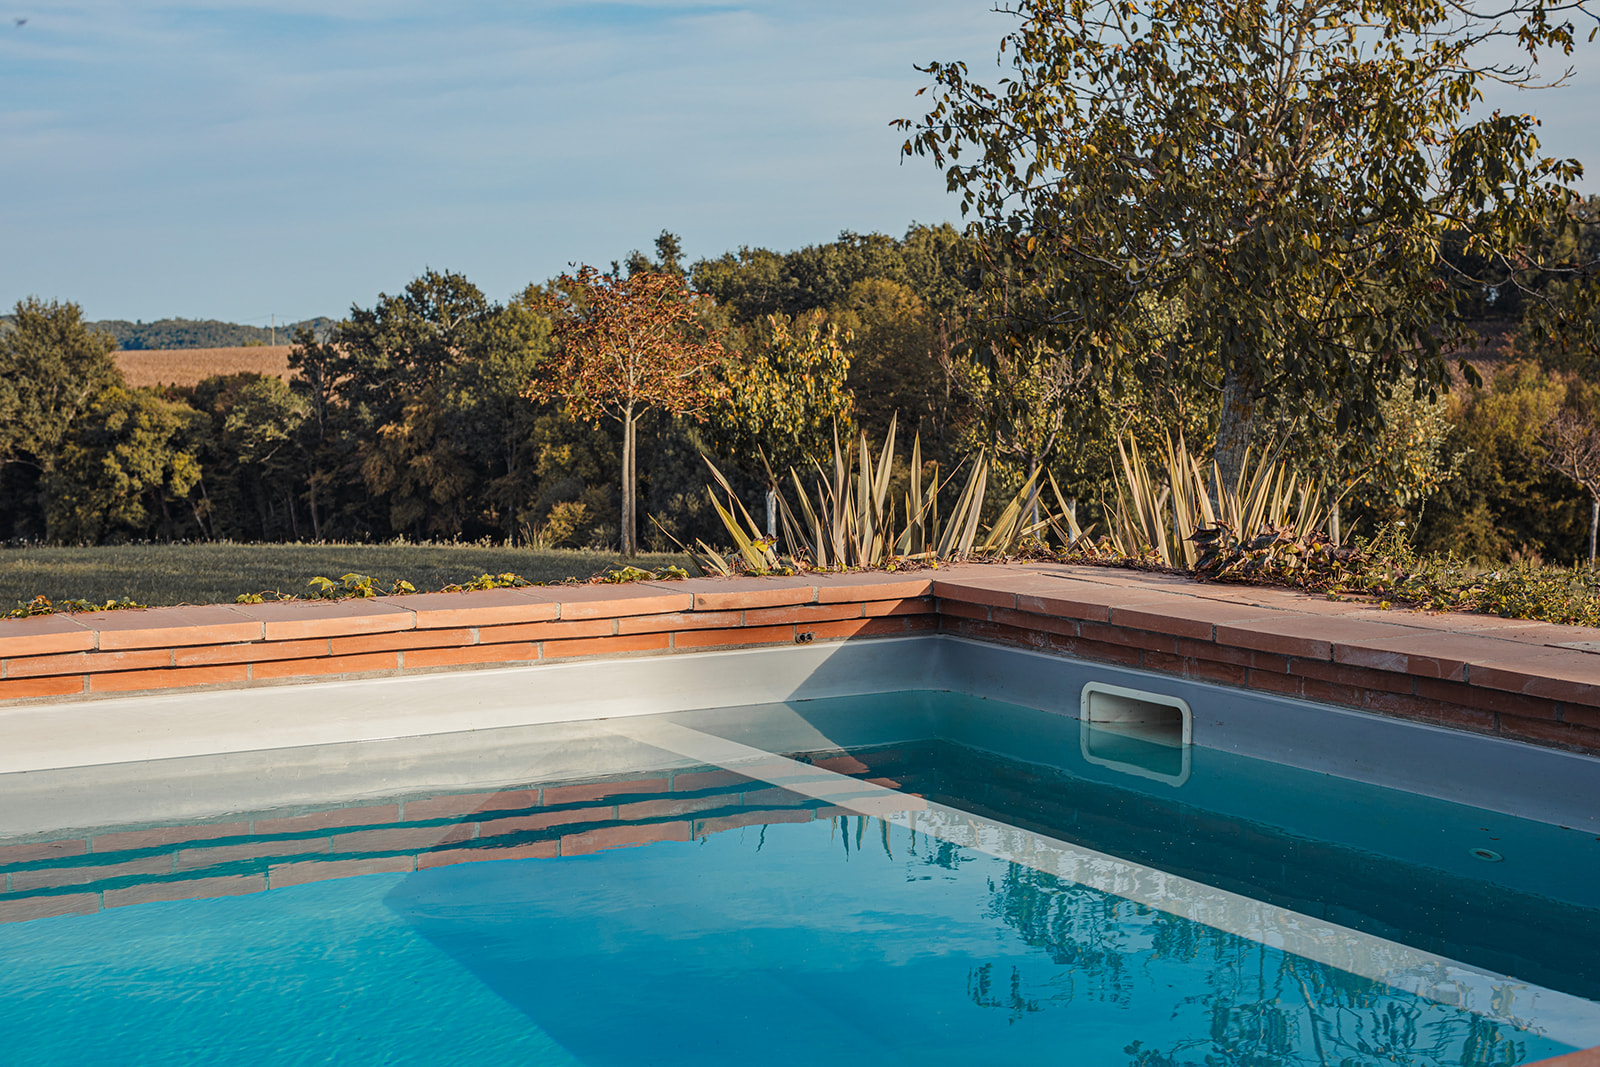 Maison des Arts - Maison vacances piscine et terrain de padel mirande gers - @Gascognecollection